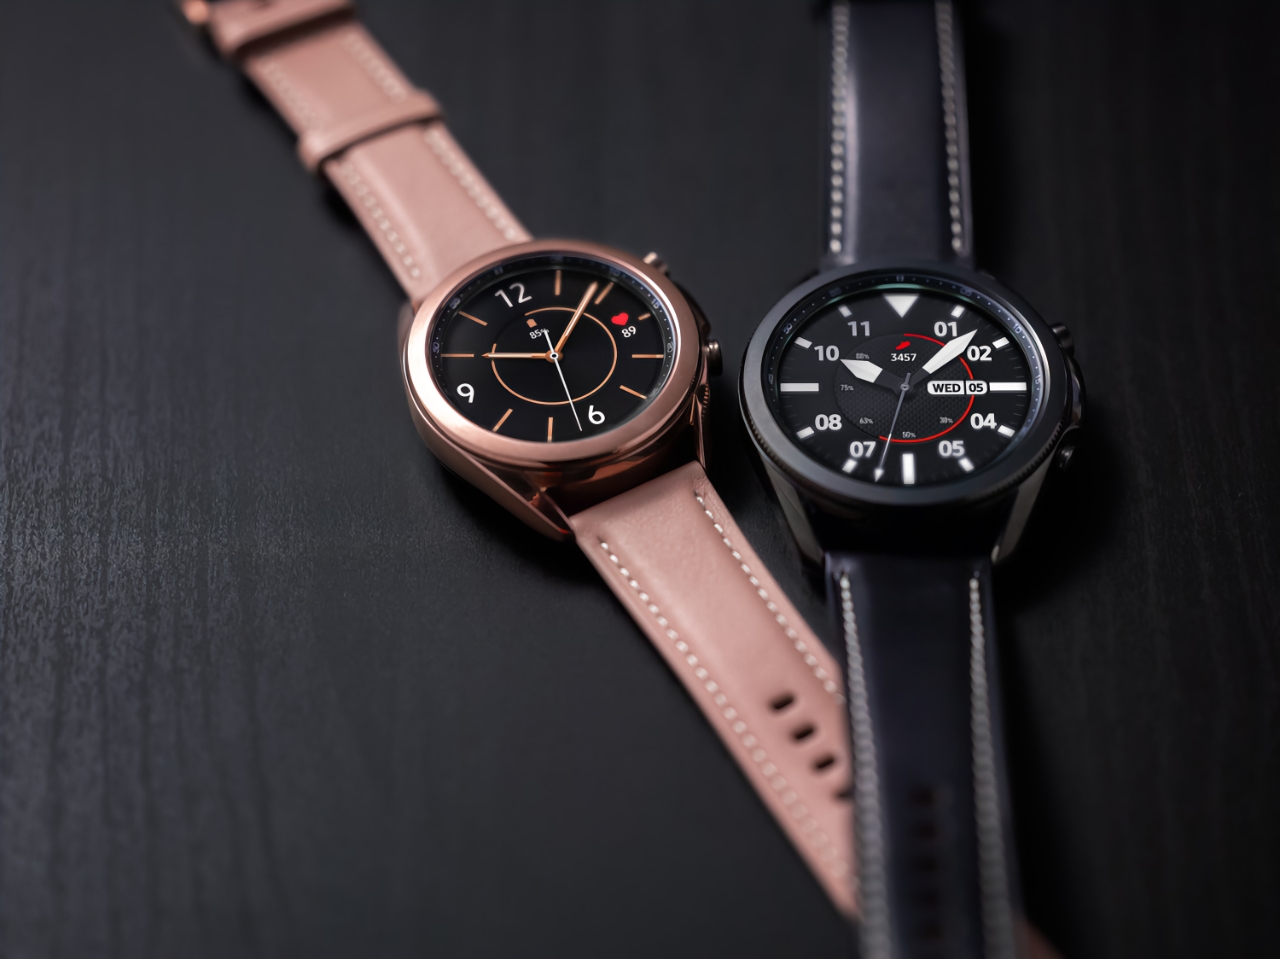 Samsung ulepszył Galaxy Watch i Galaxy Watch 3 dzięki nowej aktualizacji oprogramowania